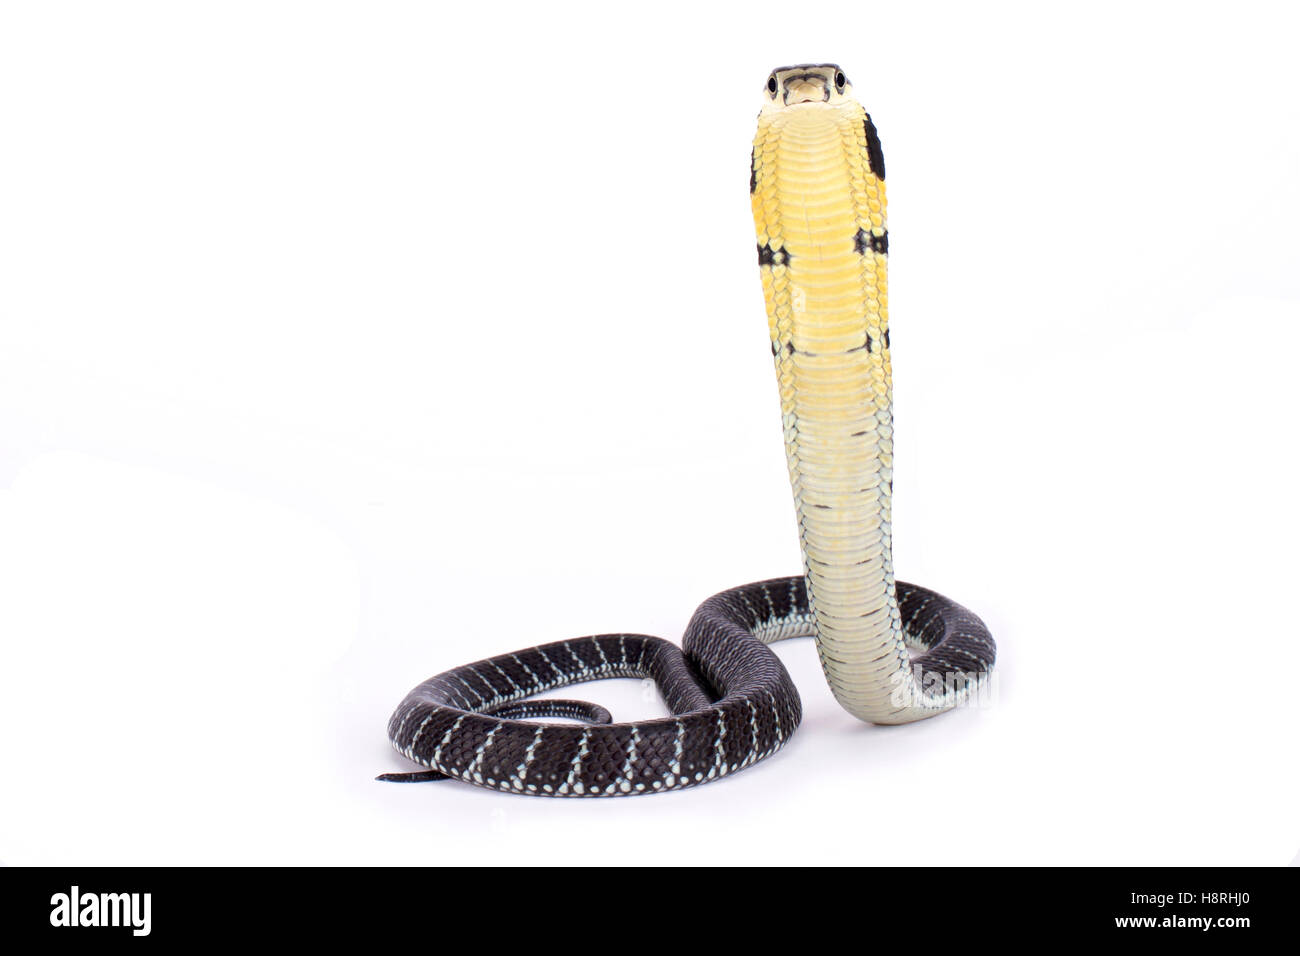 King cobra, Ophiophagus hannah Stock Photo